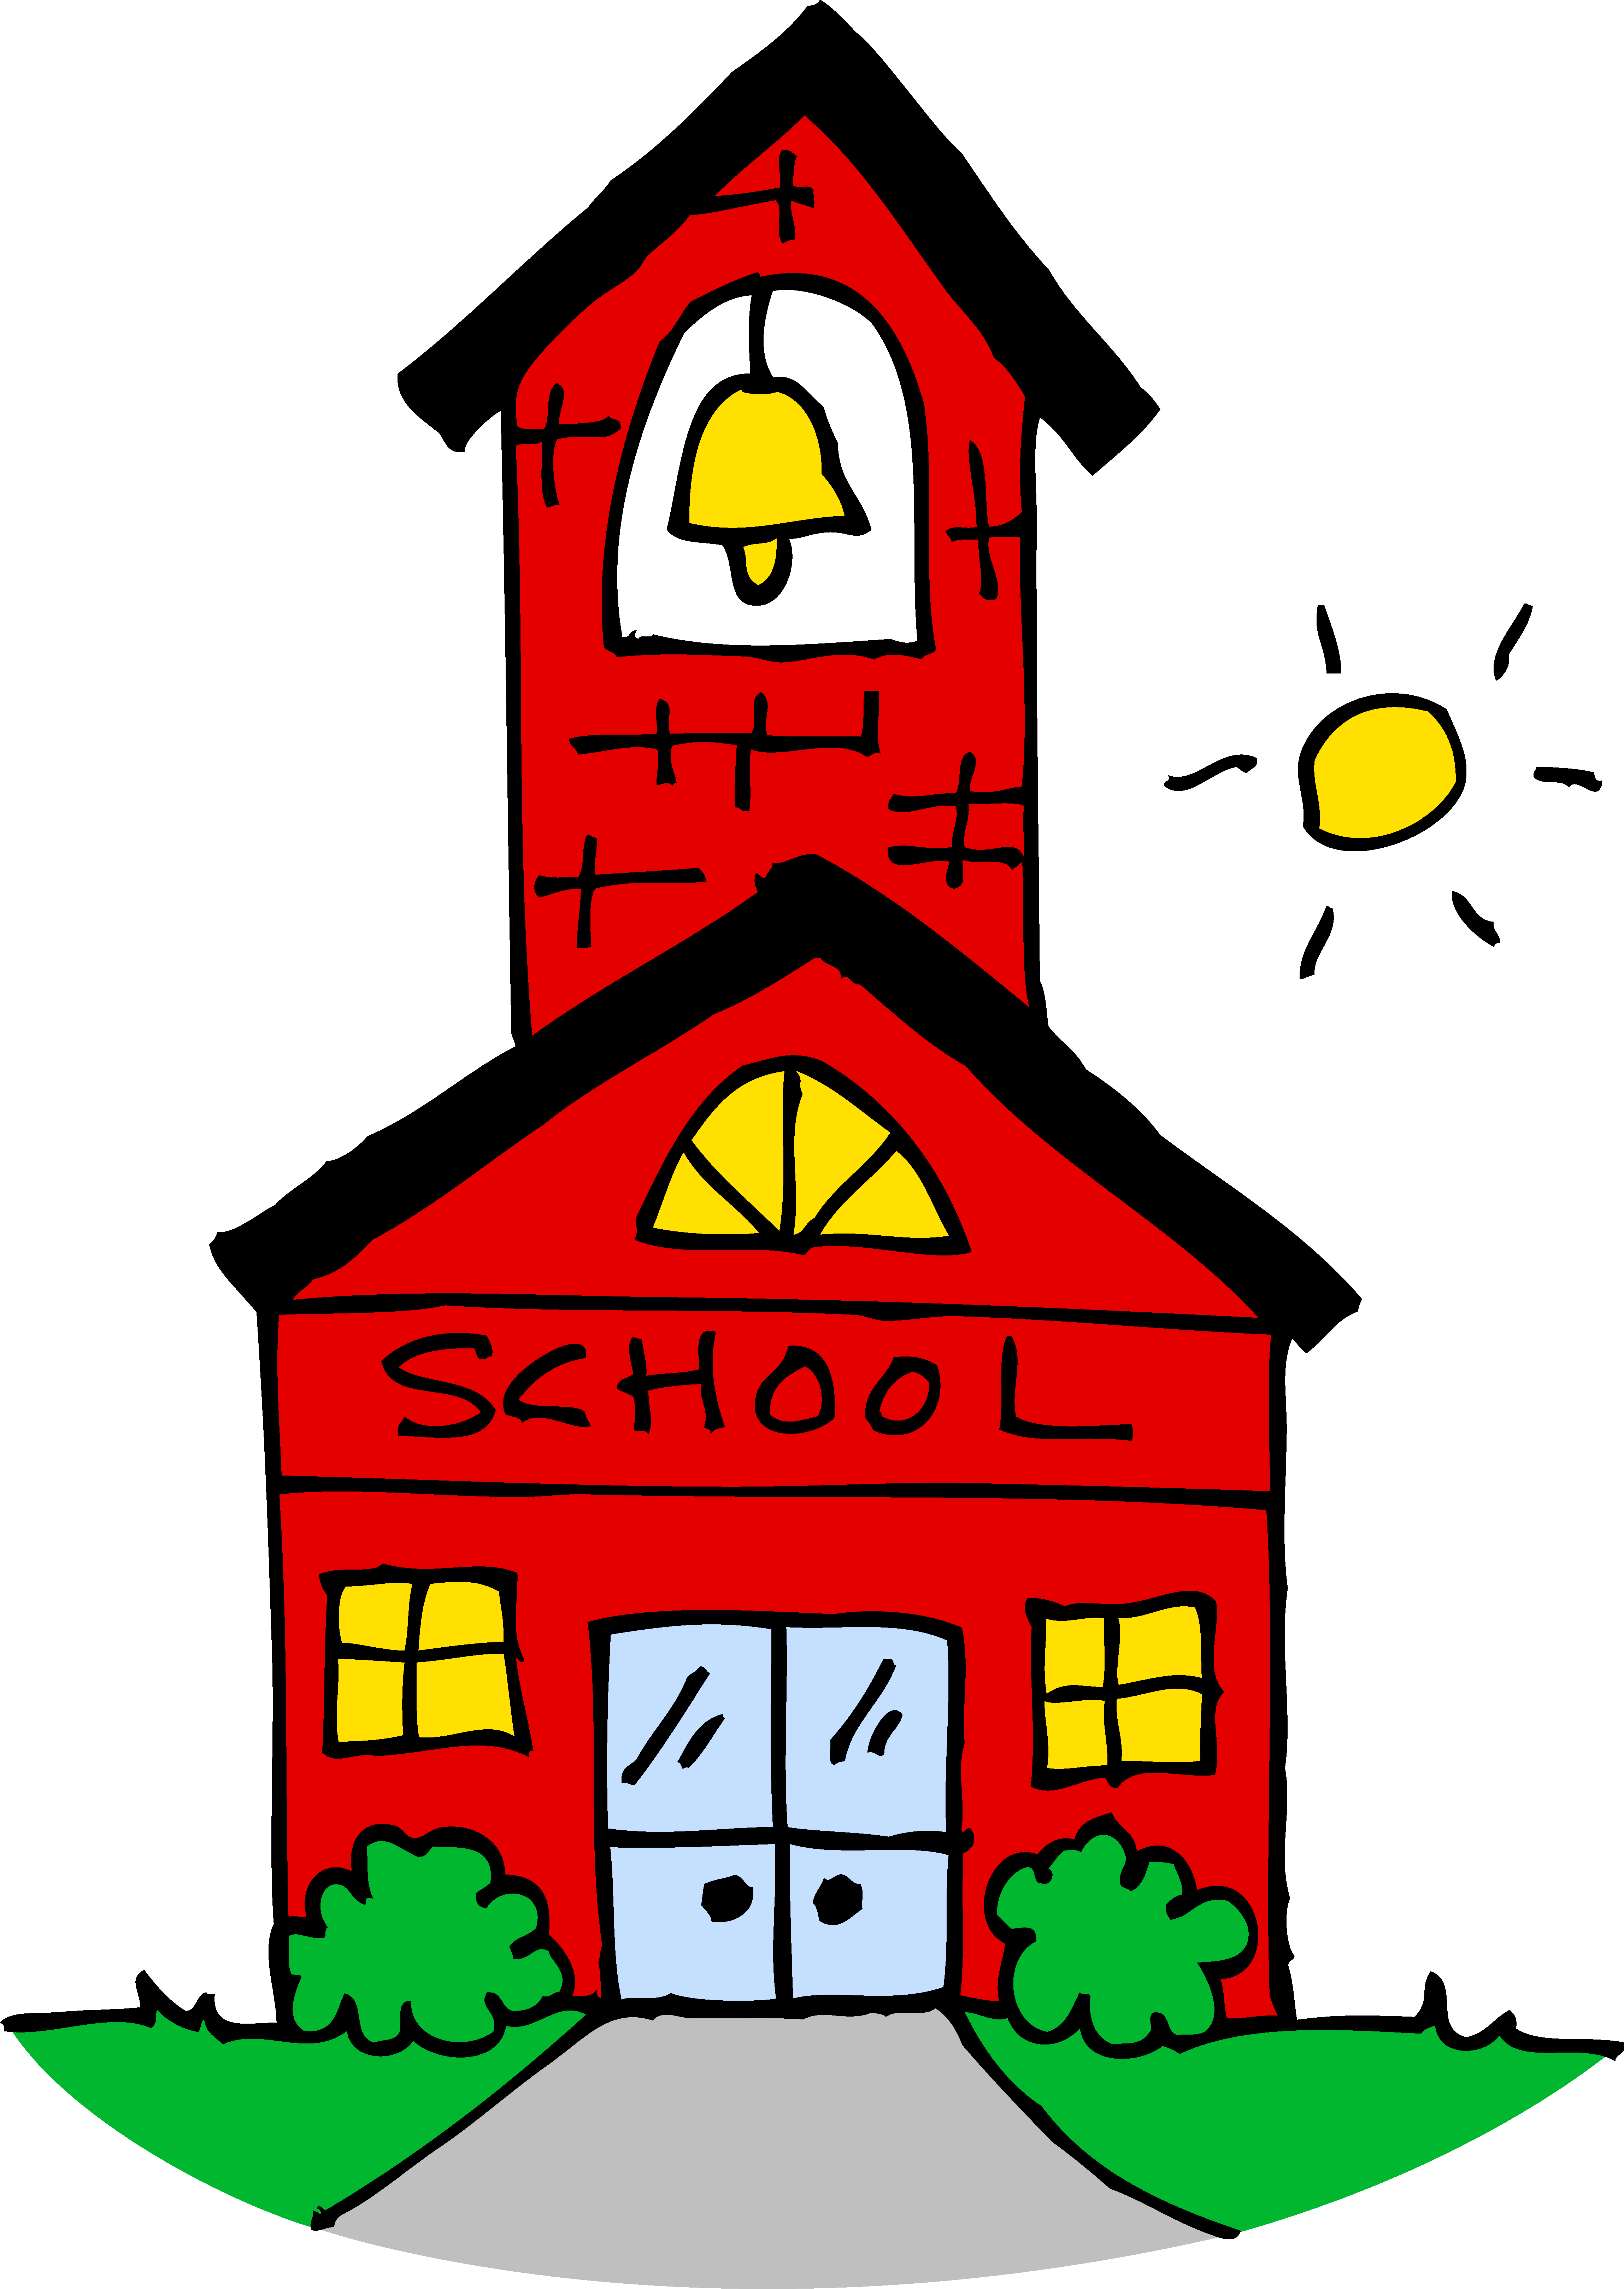 School Building Clipart | Free Download Clip Art | Free Clip Art ...